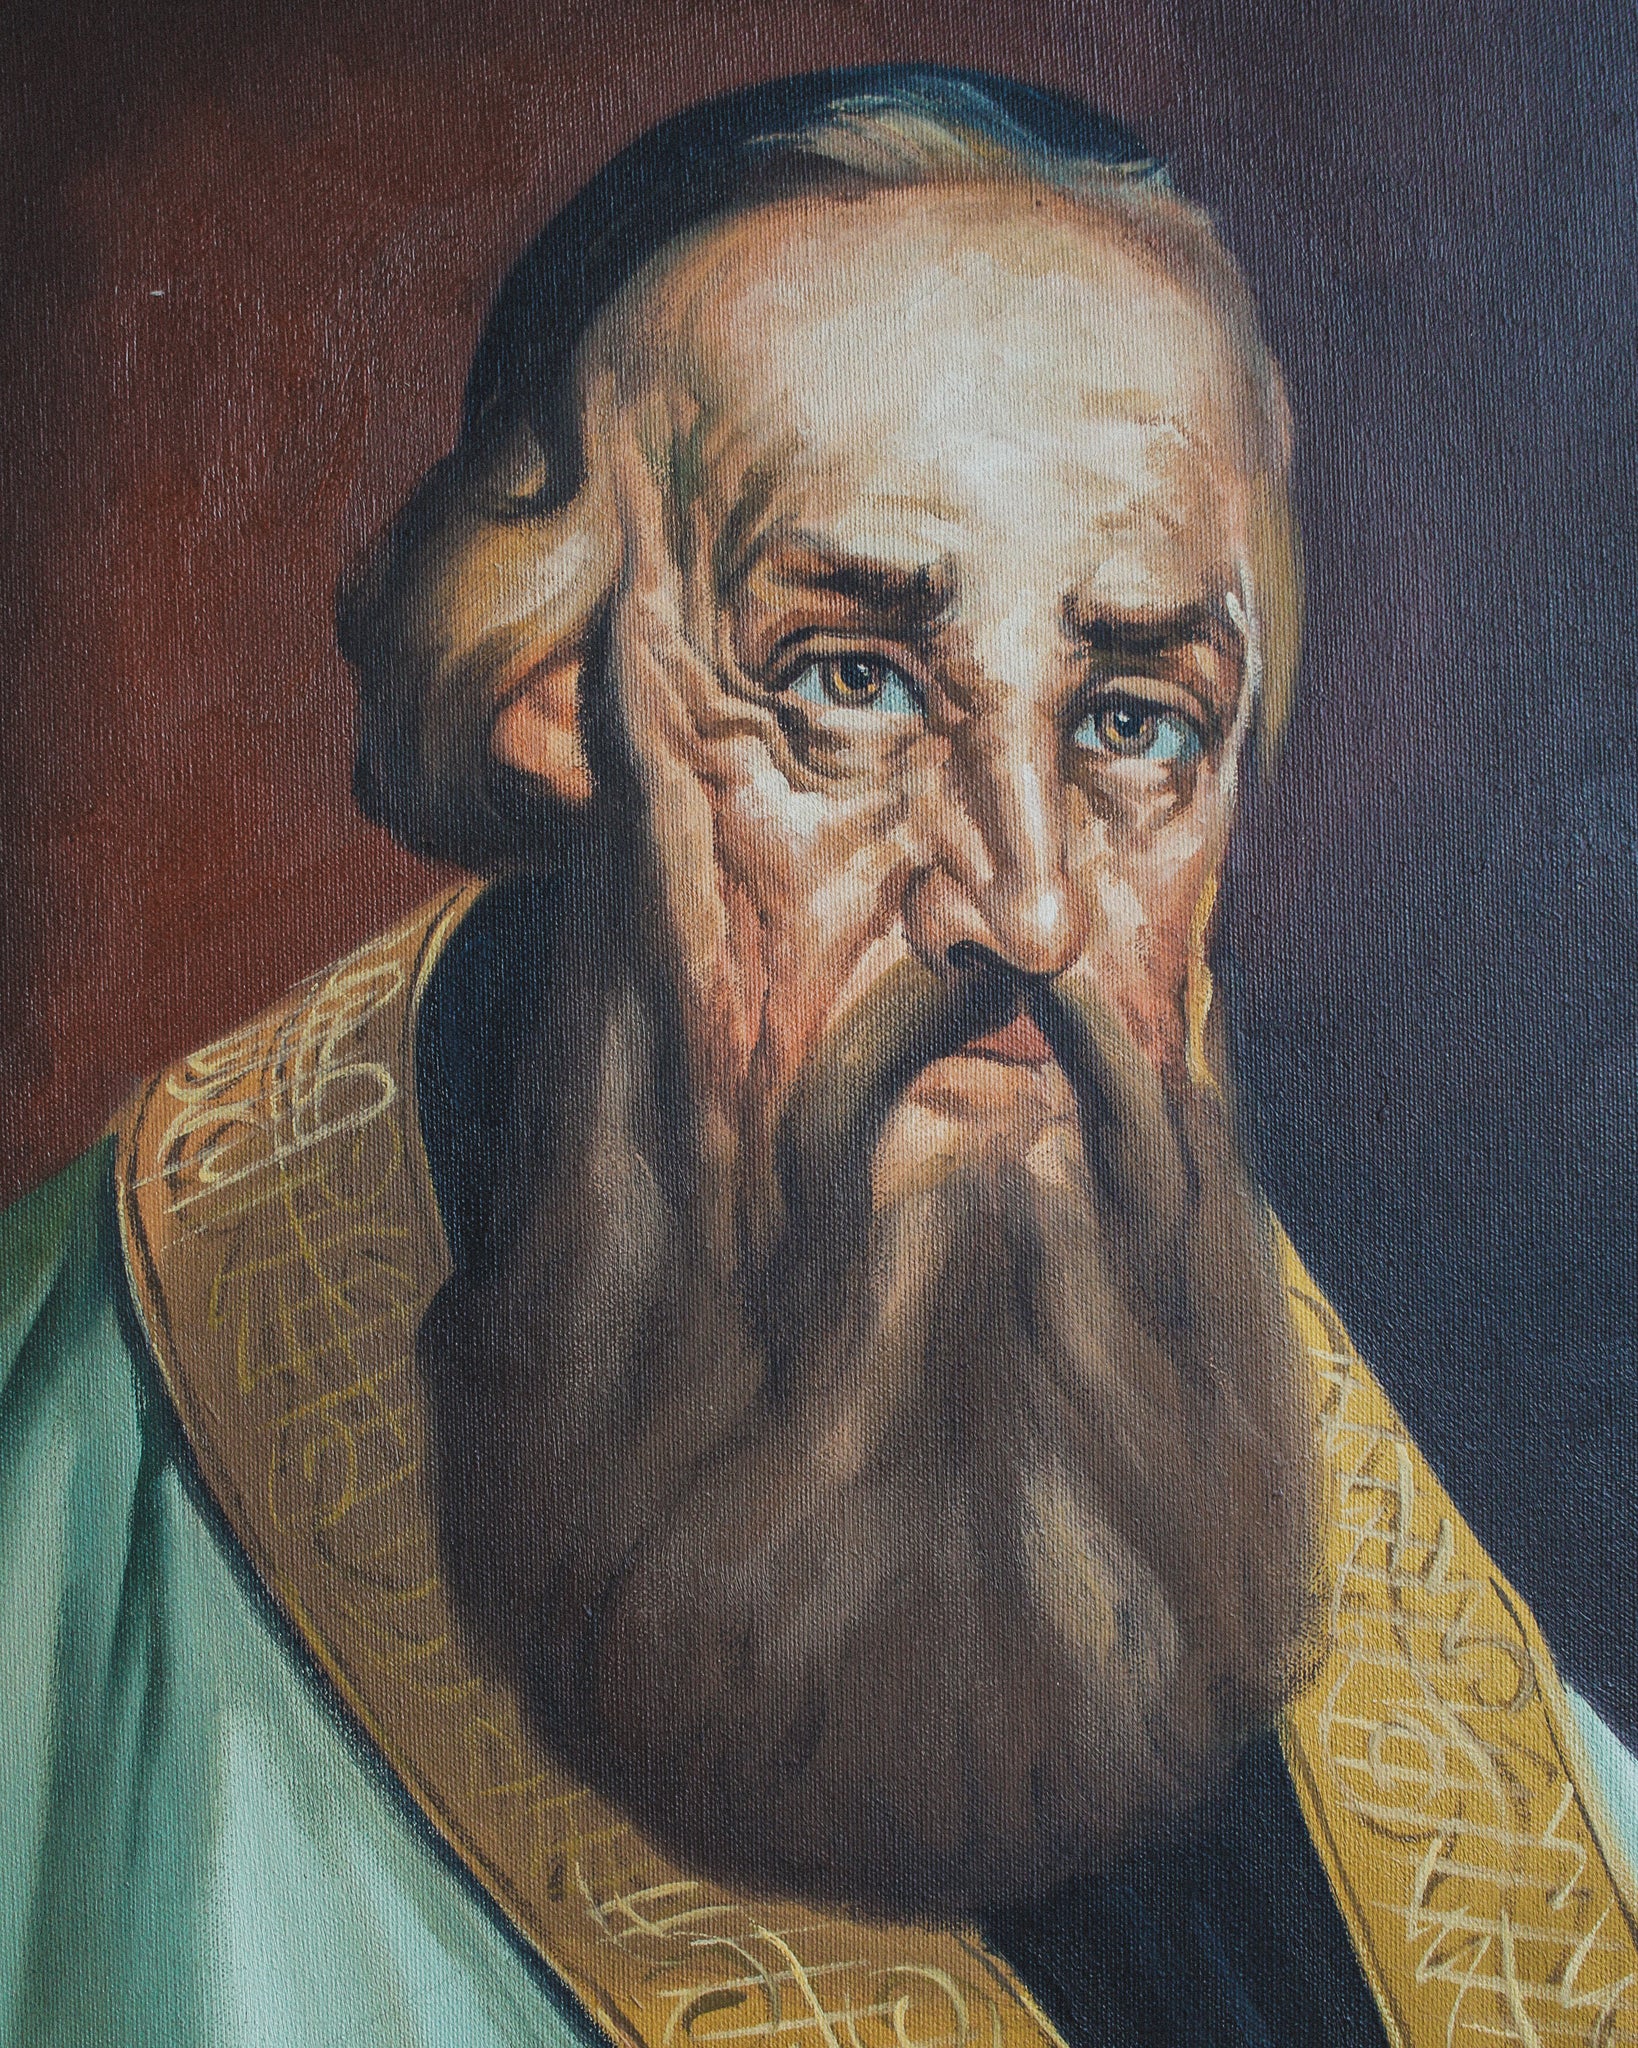 Religious Man, Oil on Canvas